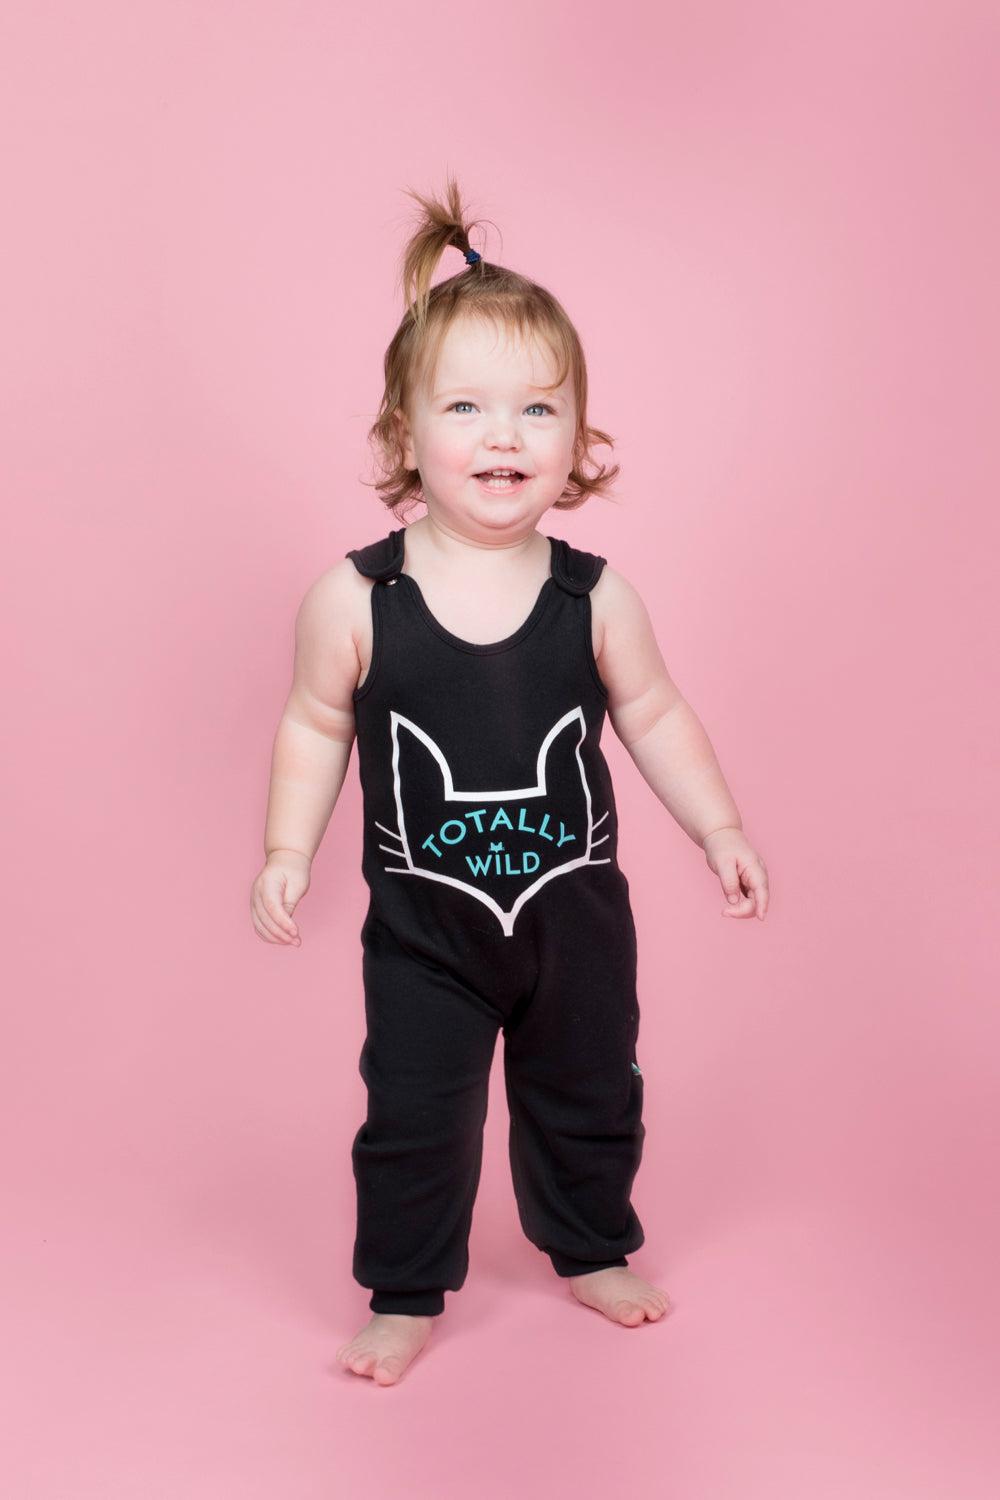 unisex organic baby romper sizes 6 to 24 months in brand logo fox head design 